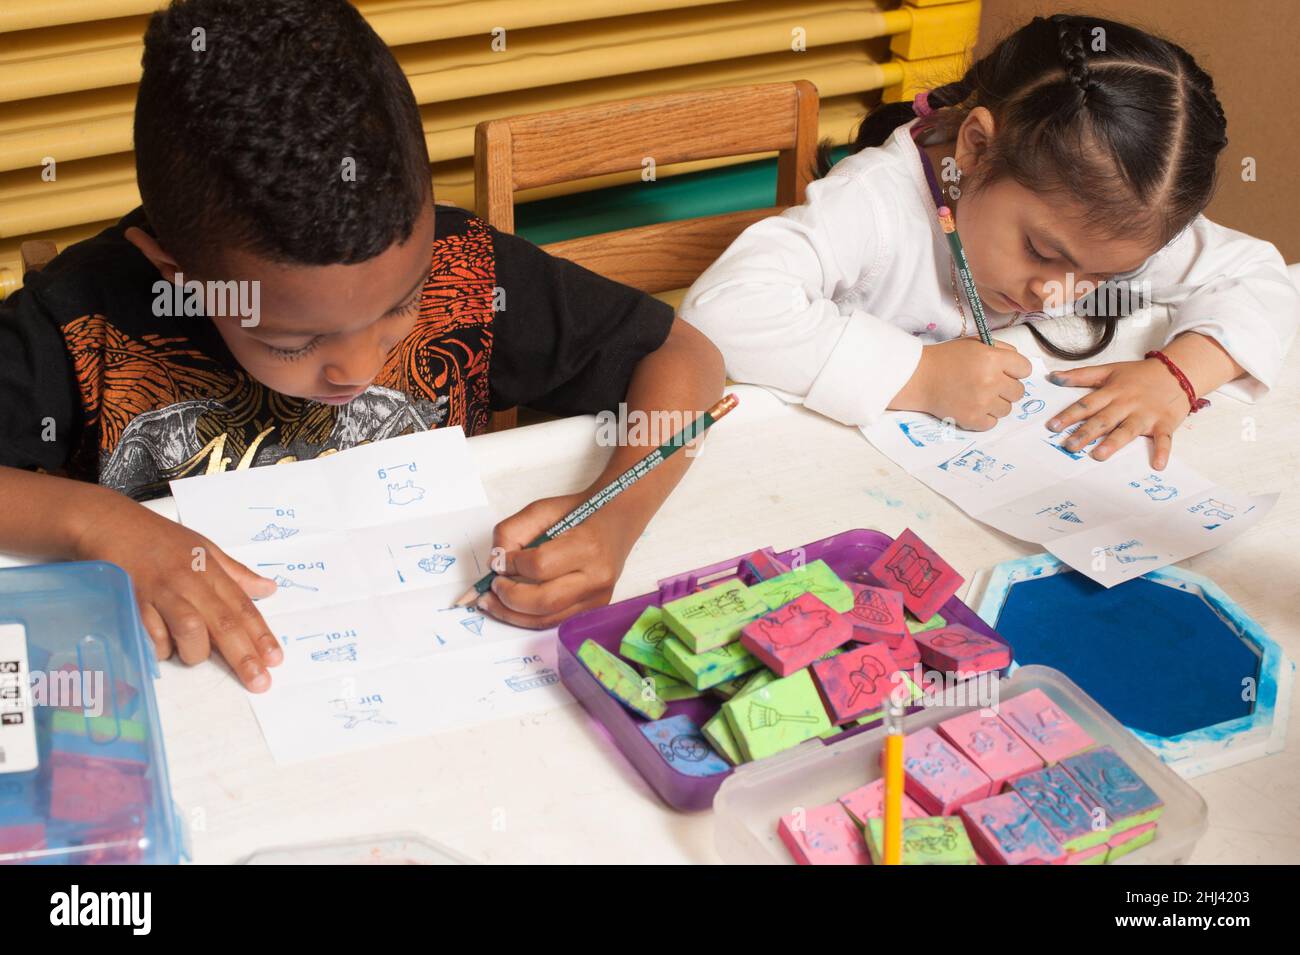 Educación Preescolar Niños de 4 años y niñas sentados lado a lado escribiendo con lápices usando manos opuestas Foto de stock